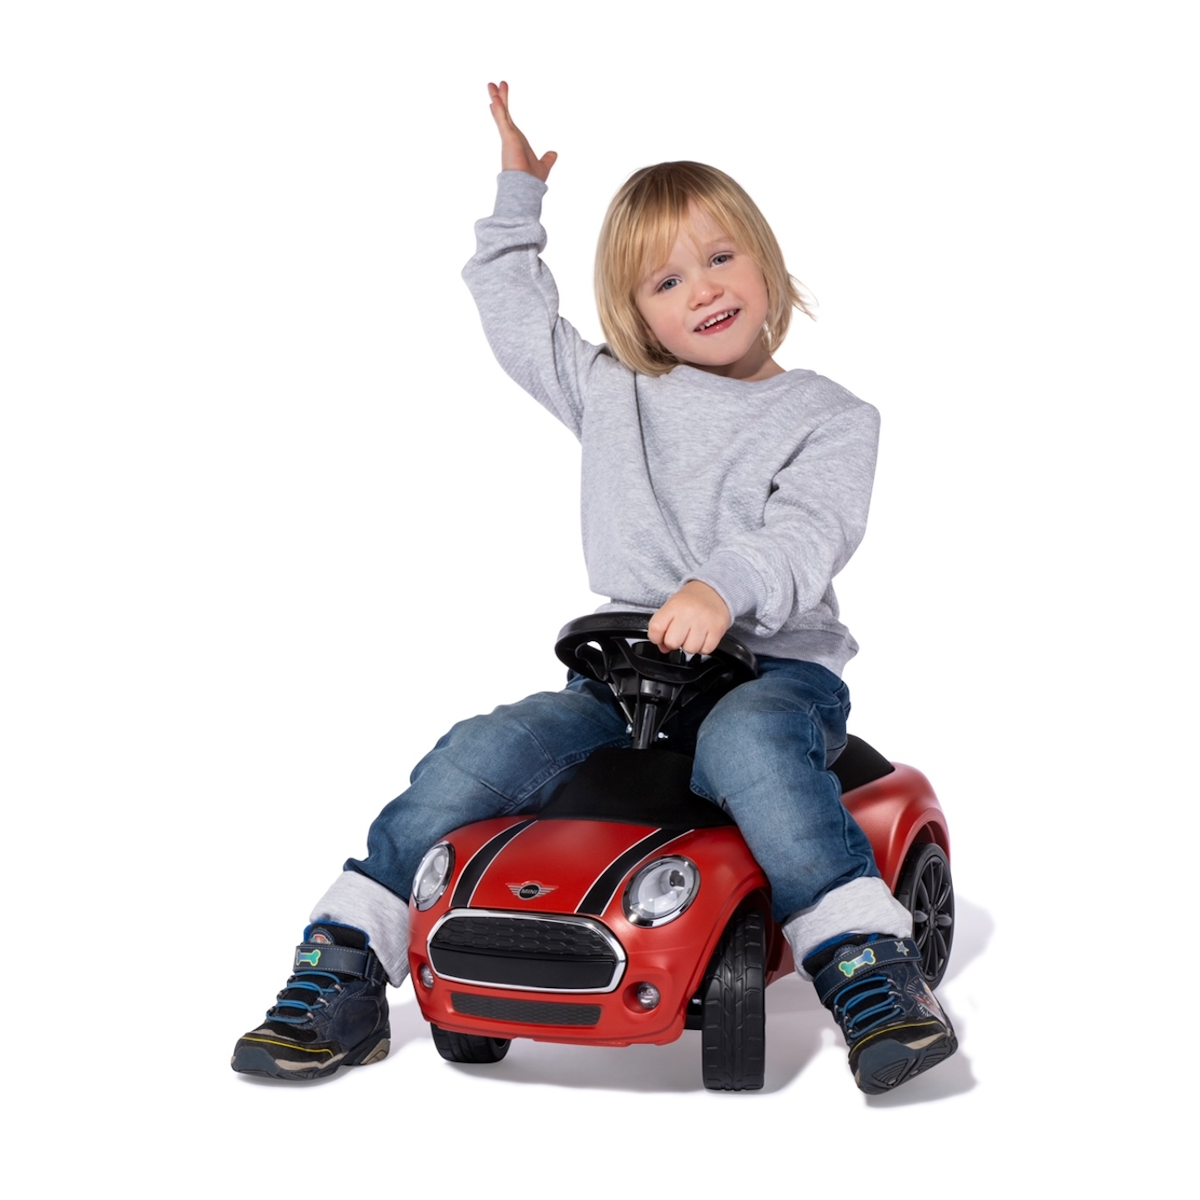 Ultimativer Fahrspaß im Mini Style - große Abenteuer schon für die Kleinsten!